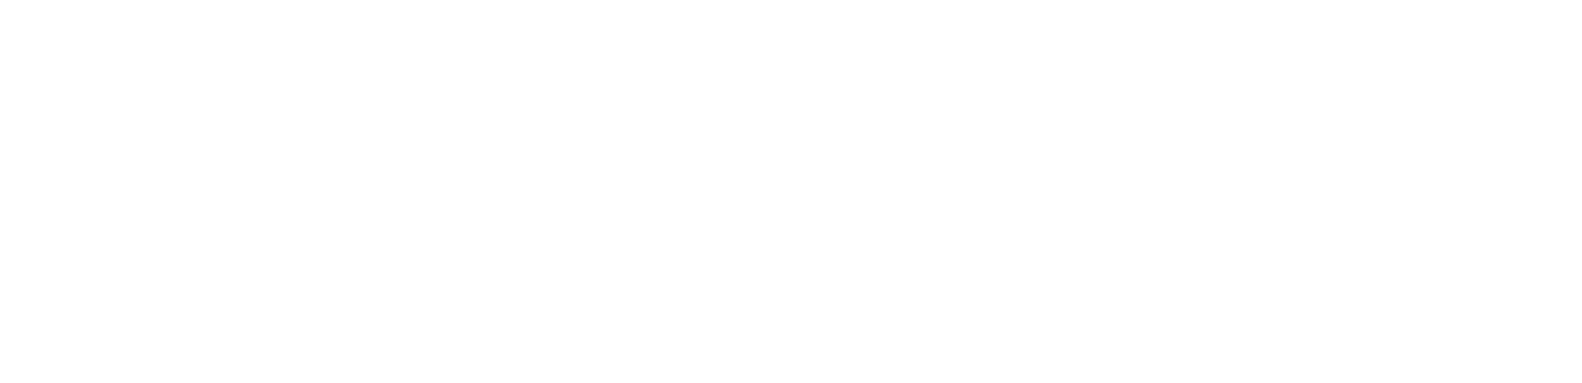 BillerudKorsnäs Logo groß für dunkle Hintergründe (transparentes PNG)